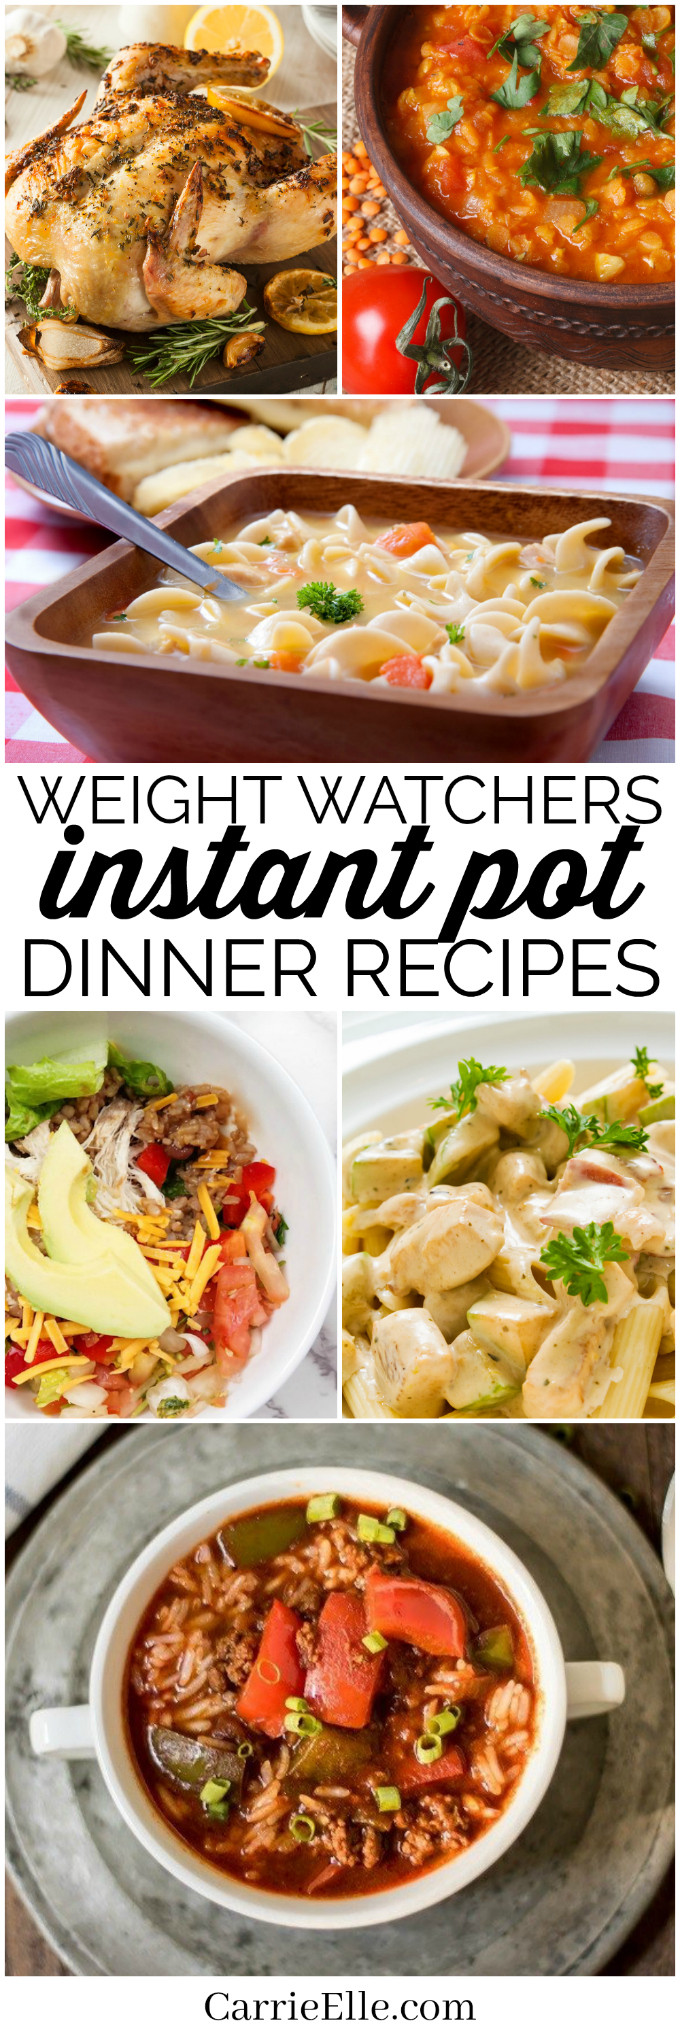 Instant Pot Weight Watcher Recipes
 Weight Watchers Instant Pot Dinner Recipes with